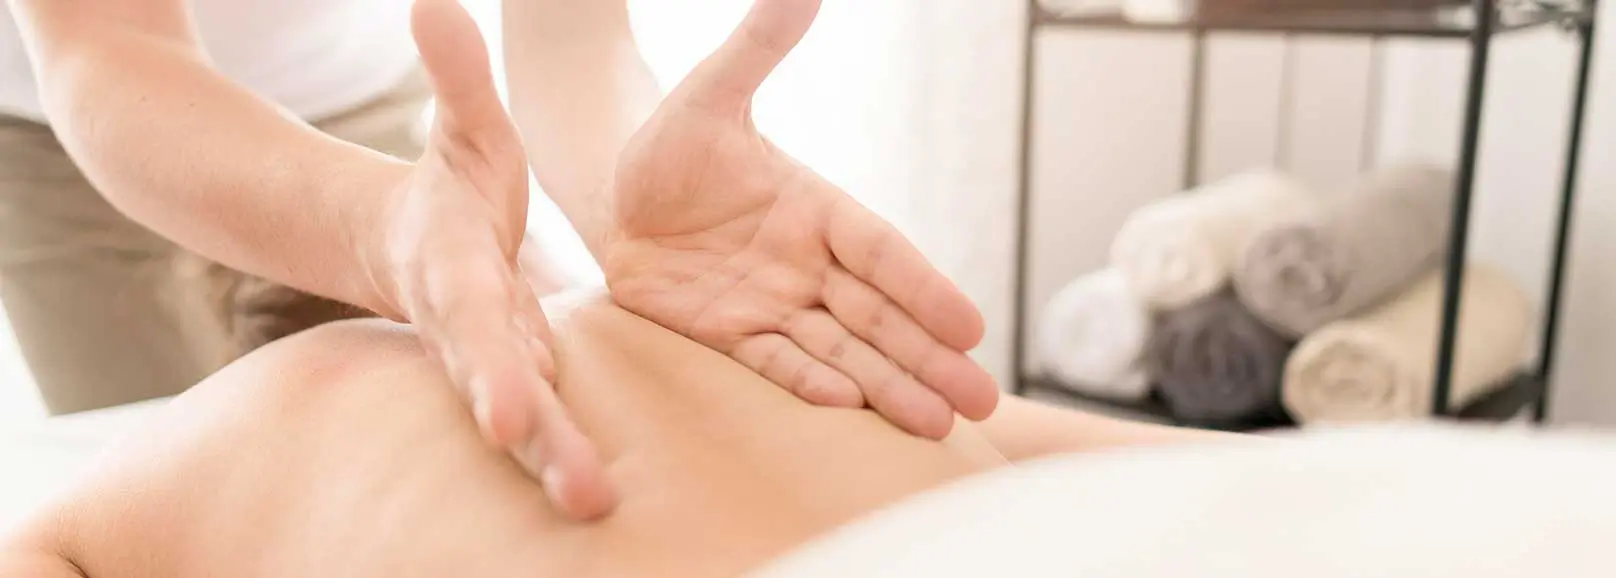 Mãos abertas fazendo massagem nas costas